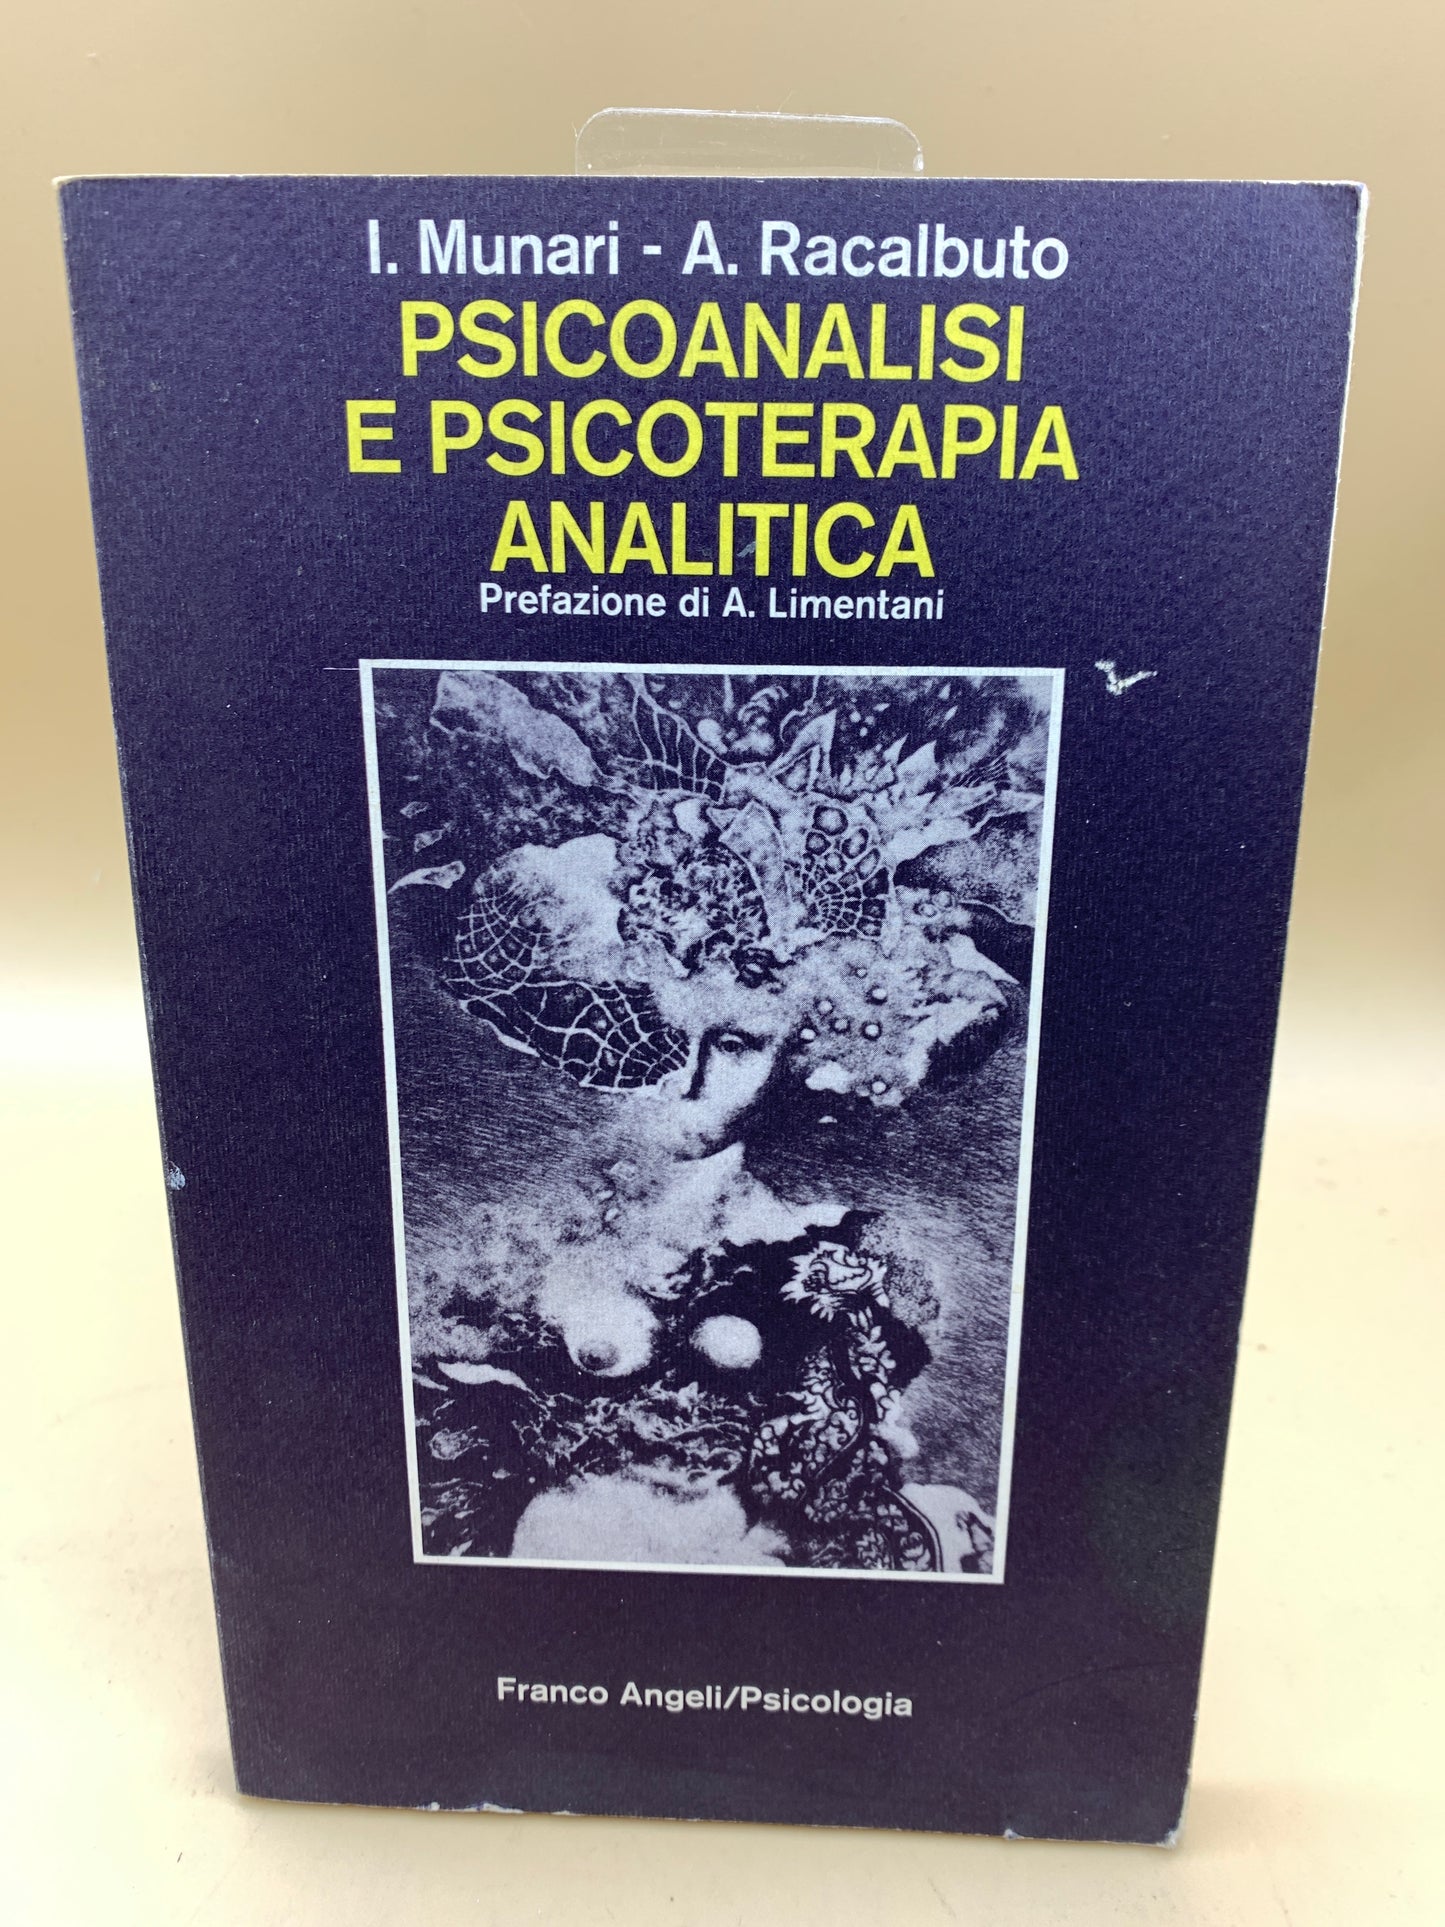 Psychoanalysis and analytical psychotherapy - Munari - Racalbuto